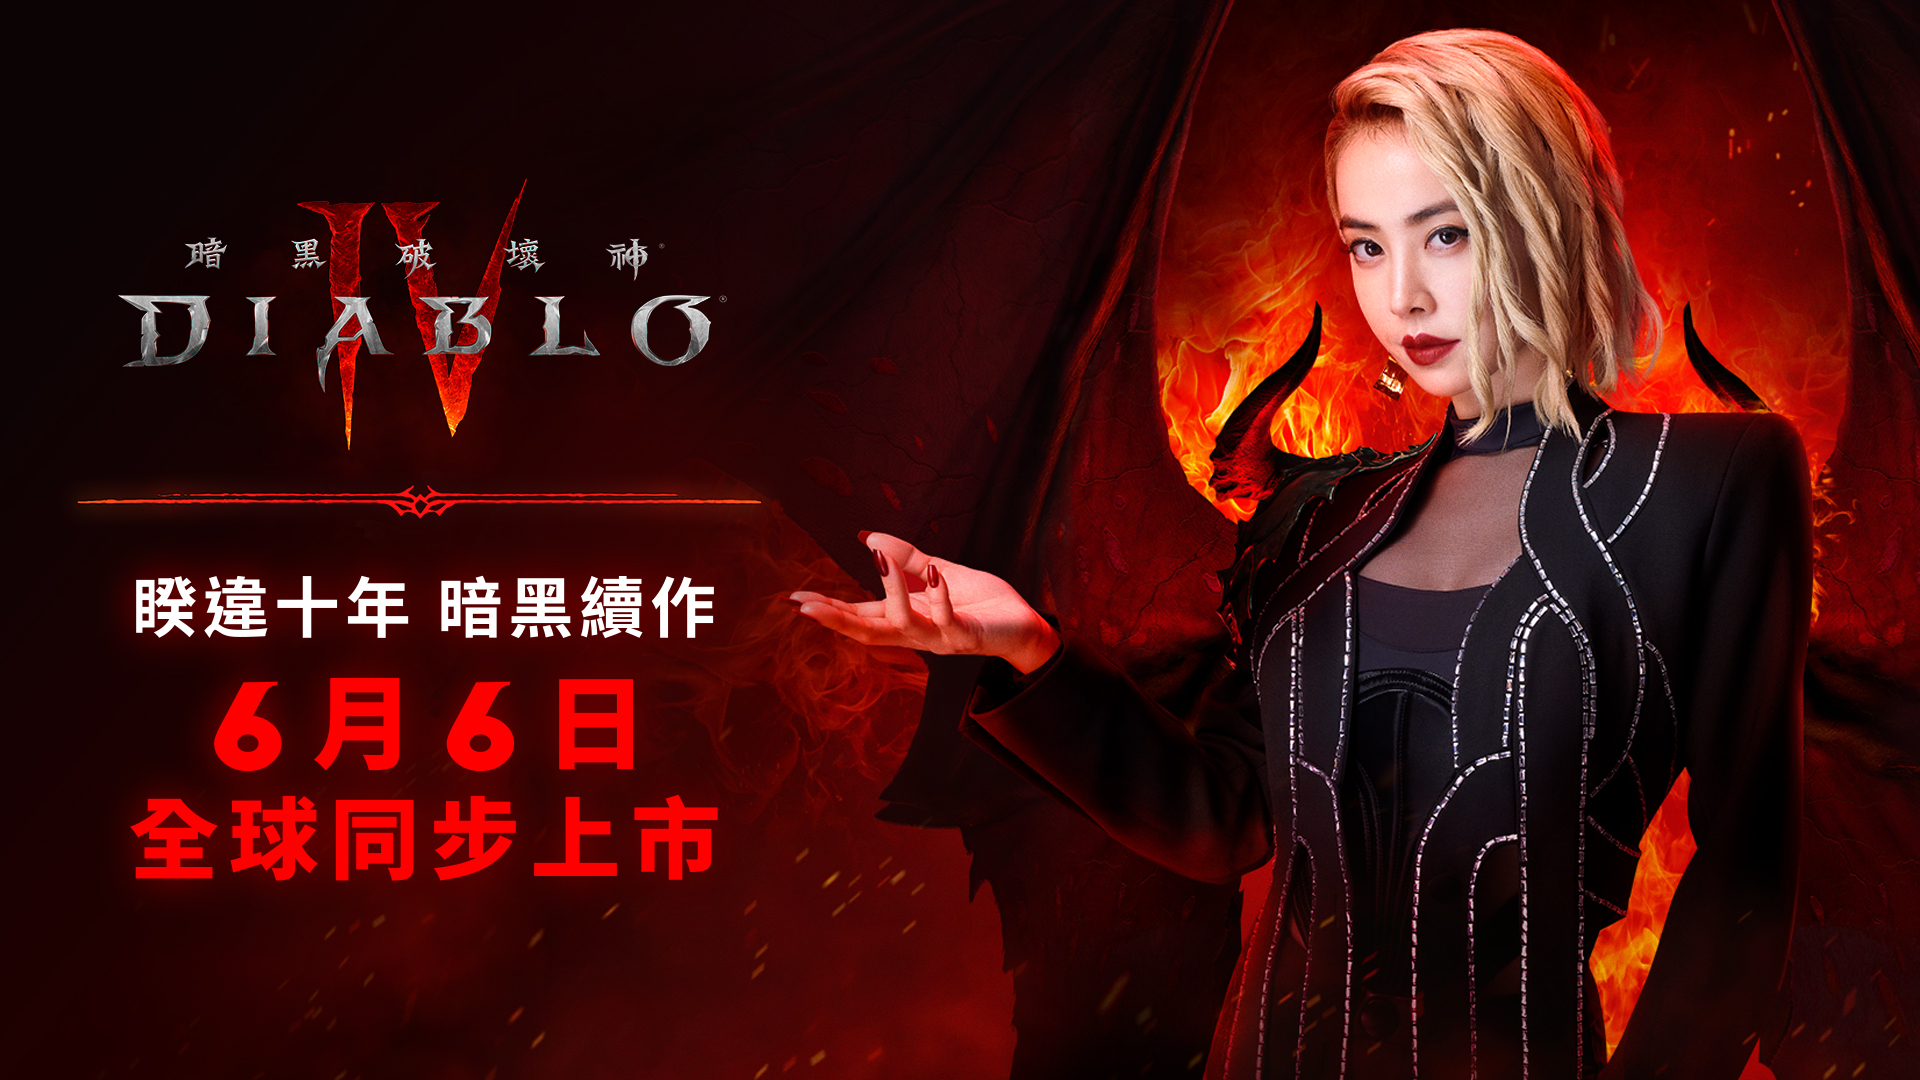 《暗黑破壞神4》公開中文宣傳MV 蔡依林獻唱宣傳曲